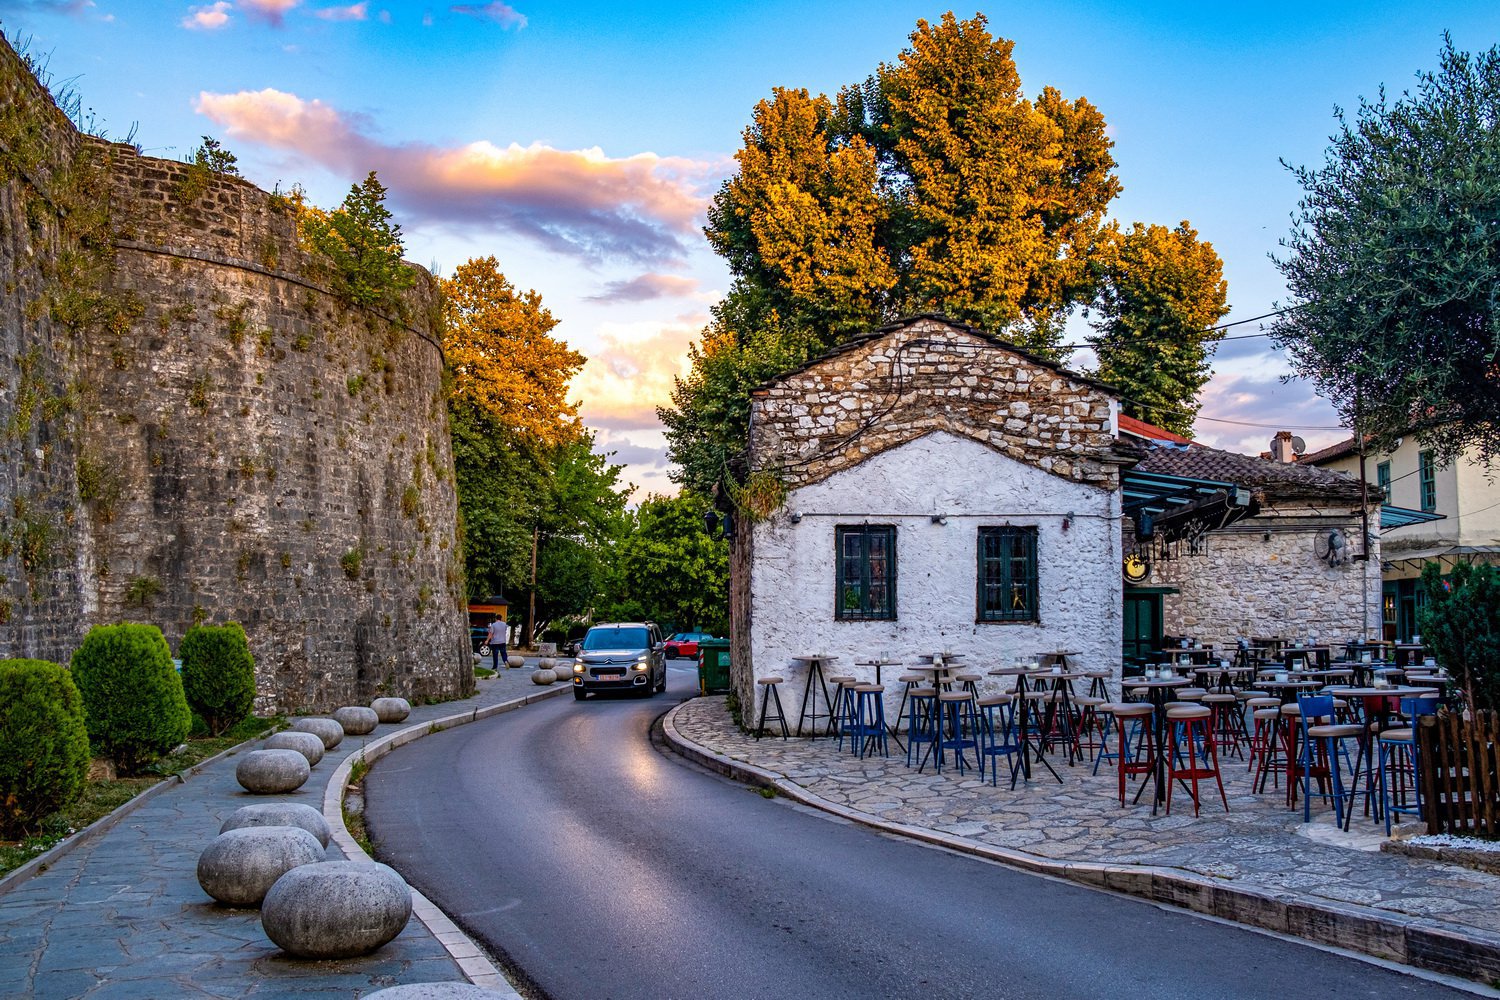 The historic center of Ioannina